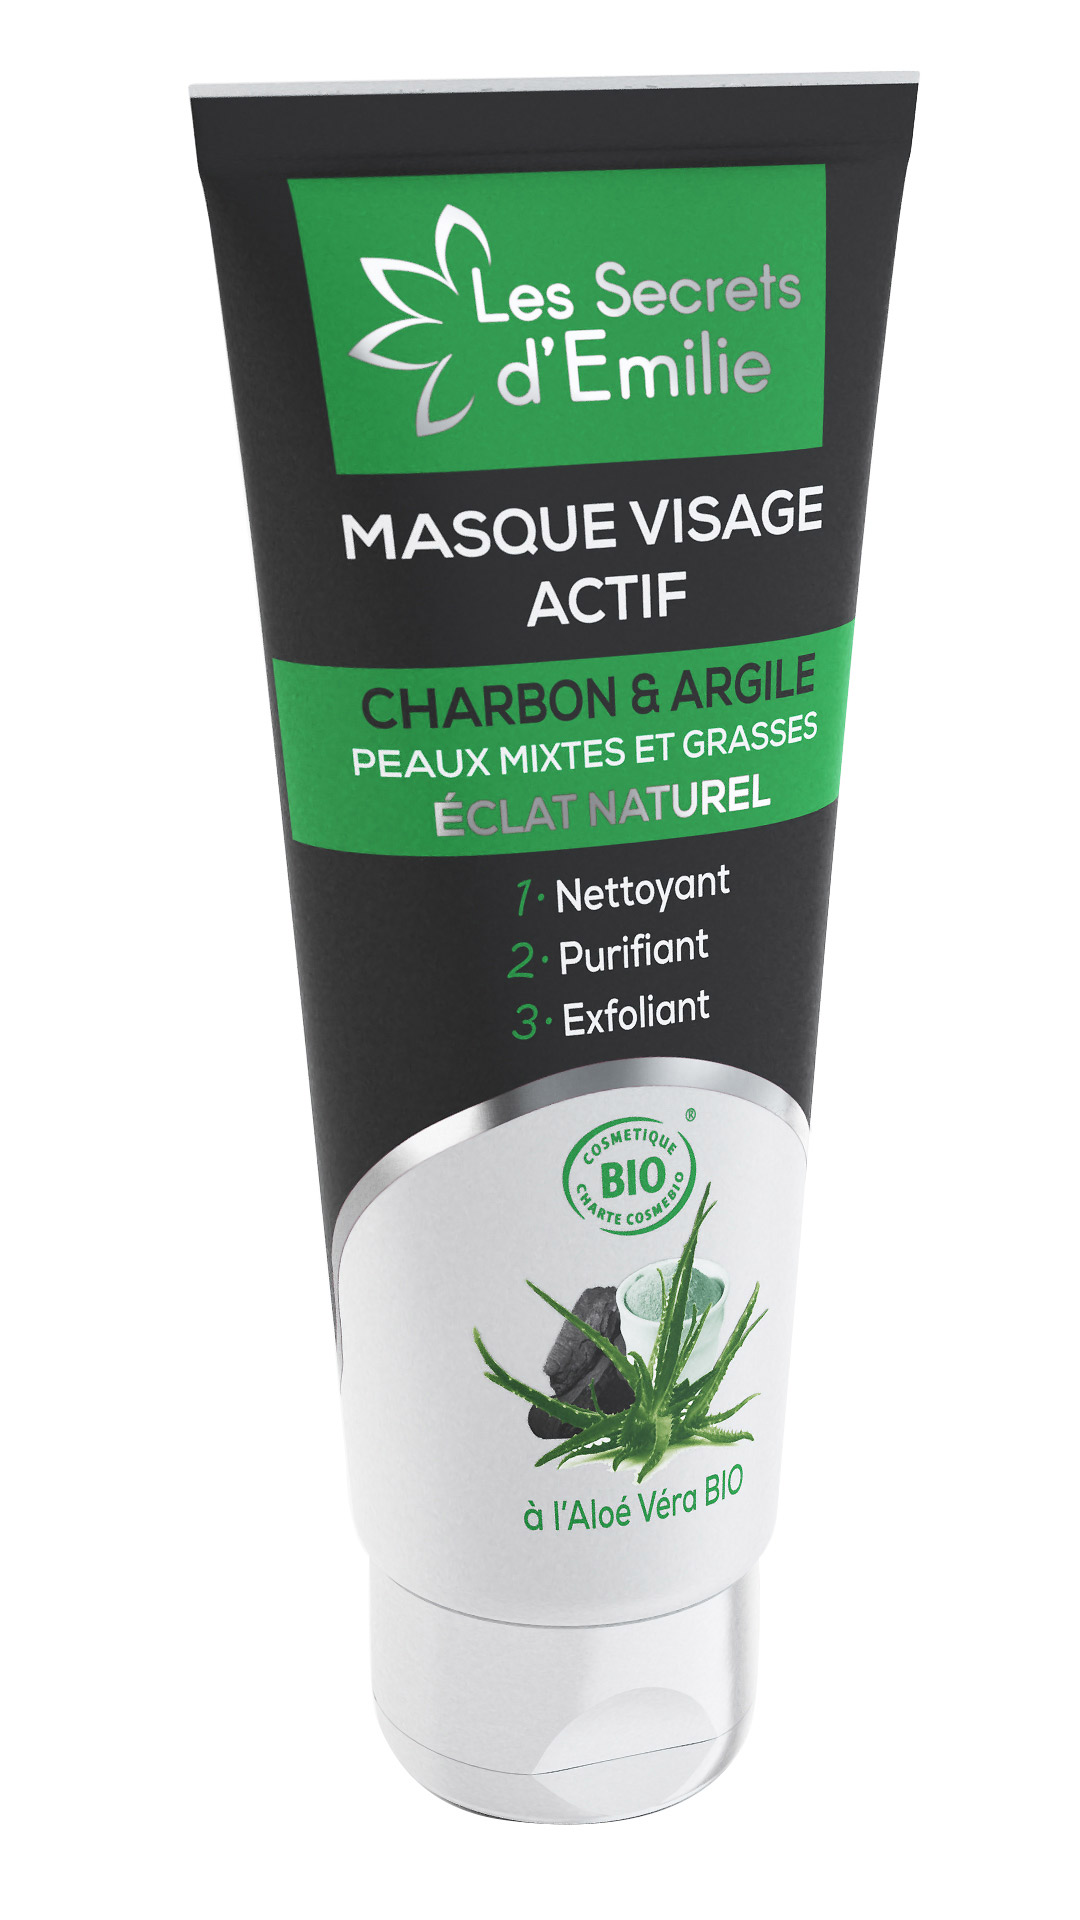 Masque Visage Actif au Charbon végétal, Argile blanche et Aloé Véra BIO Peaux mixtes et grasses, s'utilise en masque ou comme exfoliant